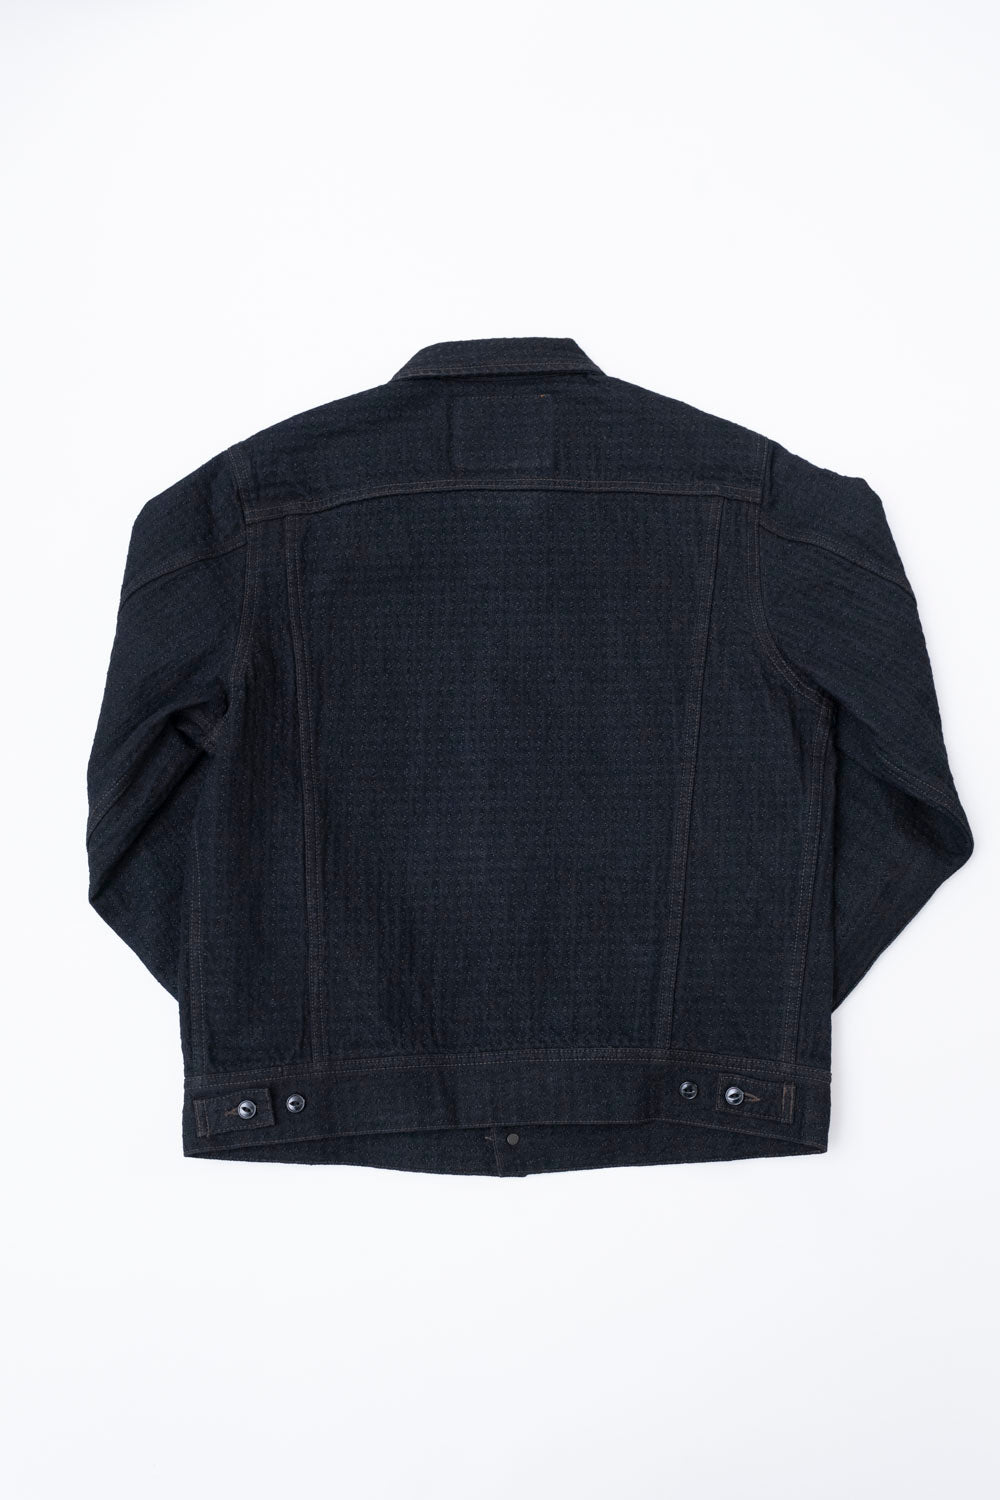 Buy VOXATI Brown Full Sleeves Shirt Collar Denim Jacket for Men's Online @  Tata CLiQ